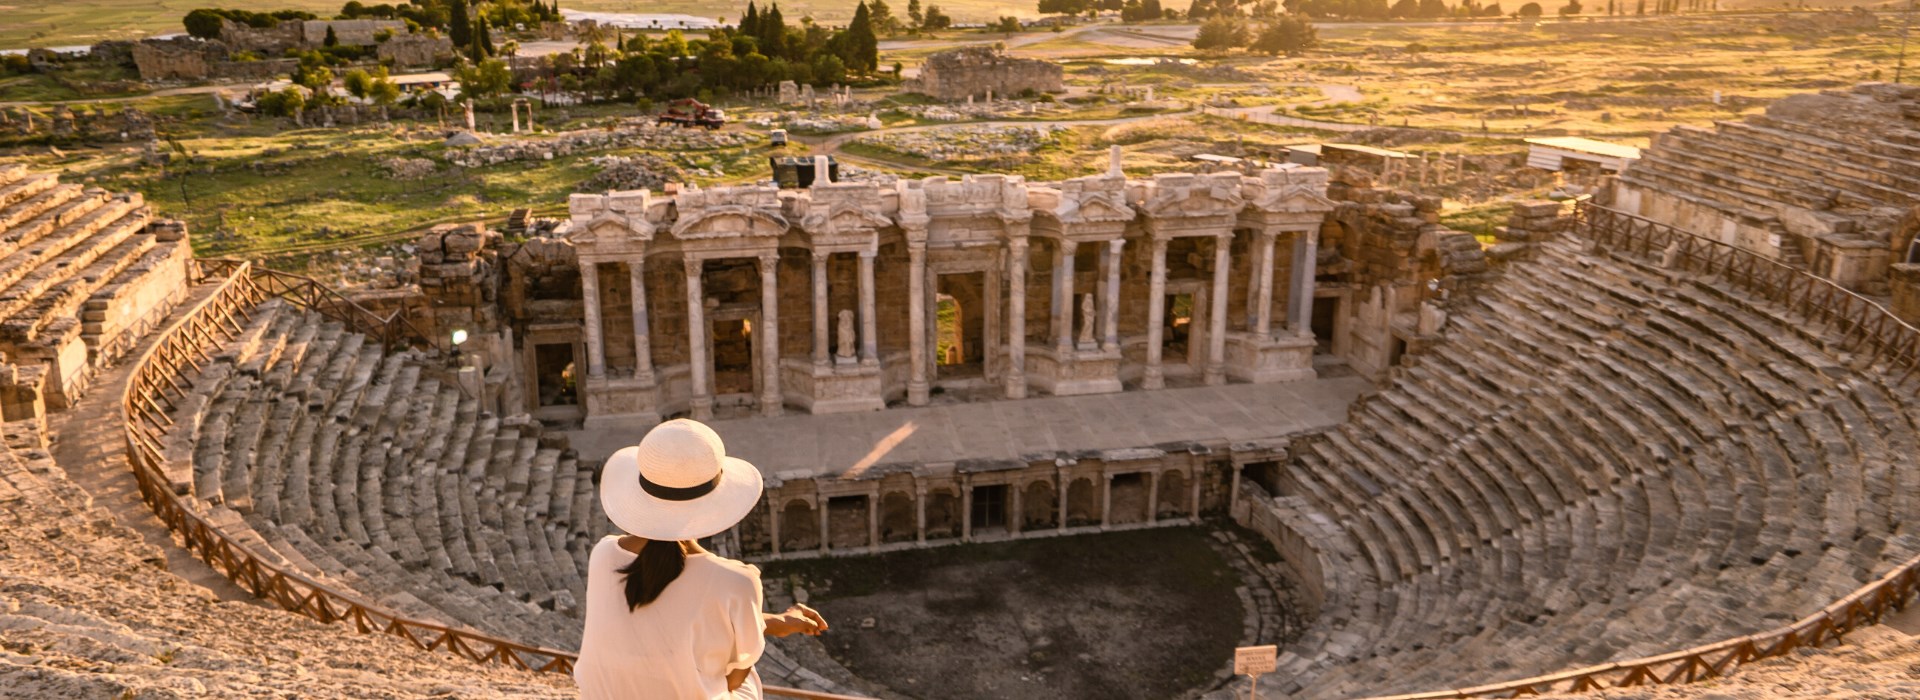 Visiter Hierapolis entre amis